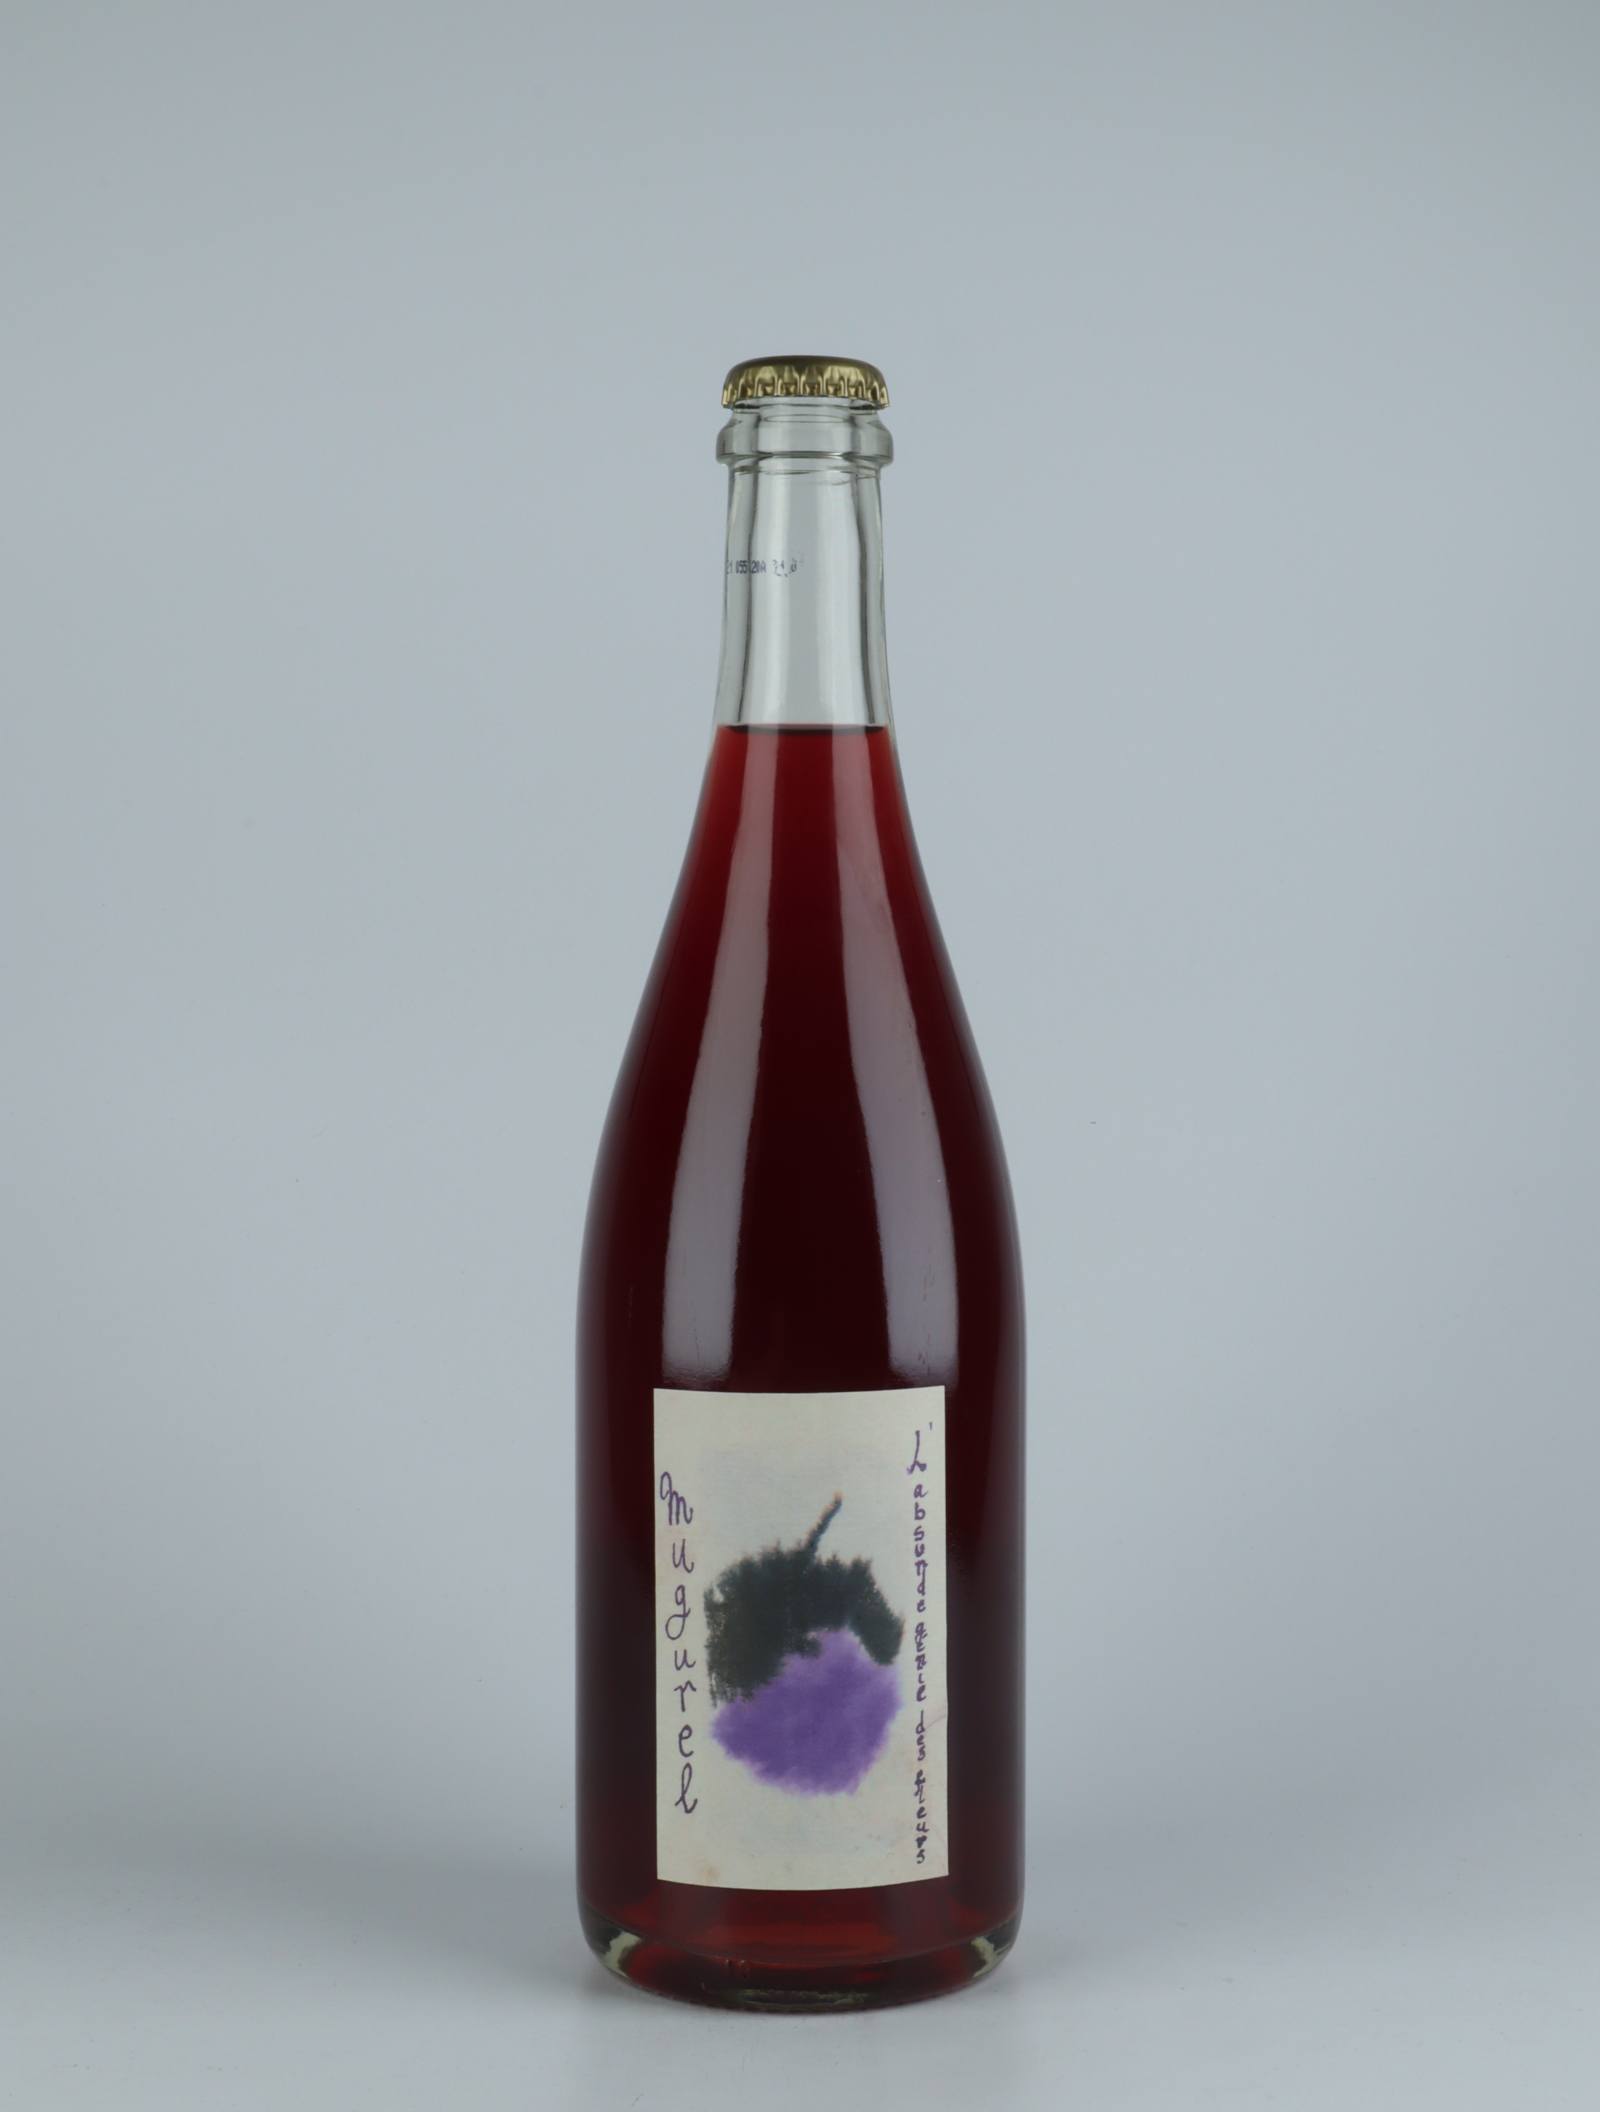 A bottle 2020 Mugurel Rosé from , Languedoc in France